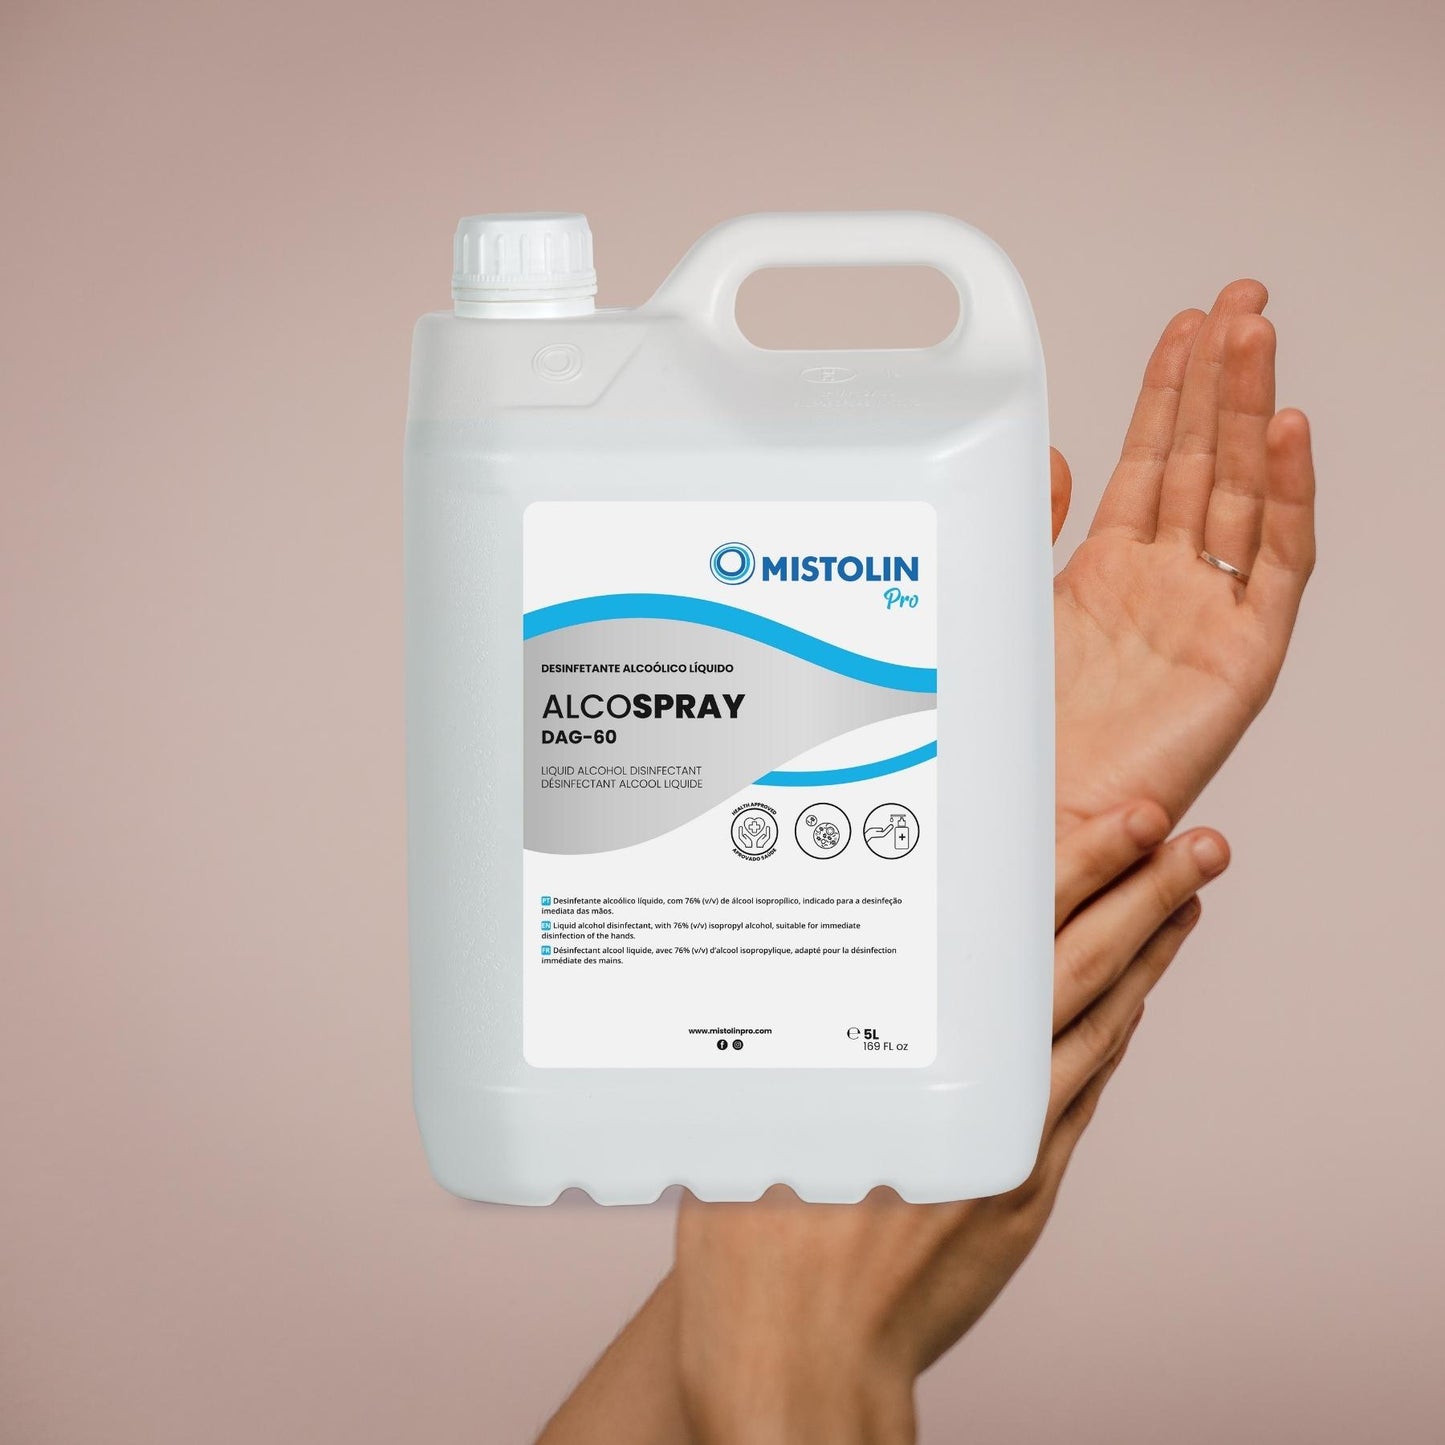 ALCOSPRAY DAG-60 DESINFETANTE MÃOS LIQUIDO 5LT, é um desinfetante alcoólico líquido, indicado para a desinfeção imediata das mãos.